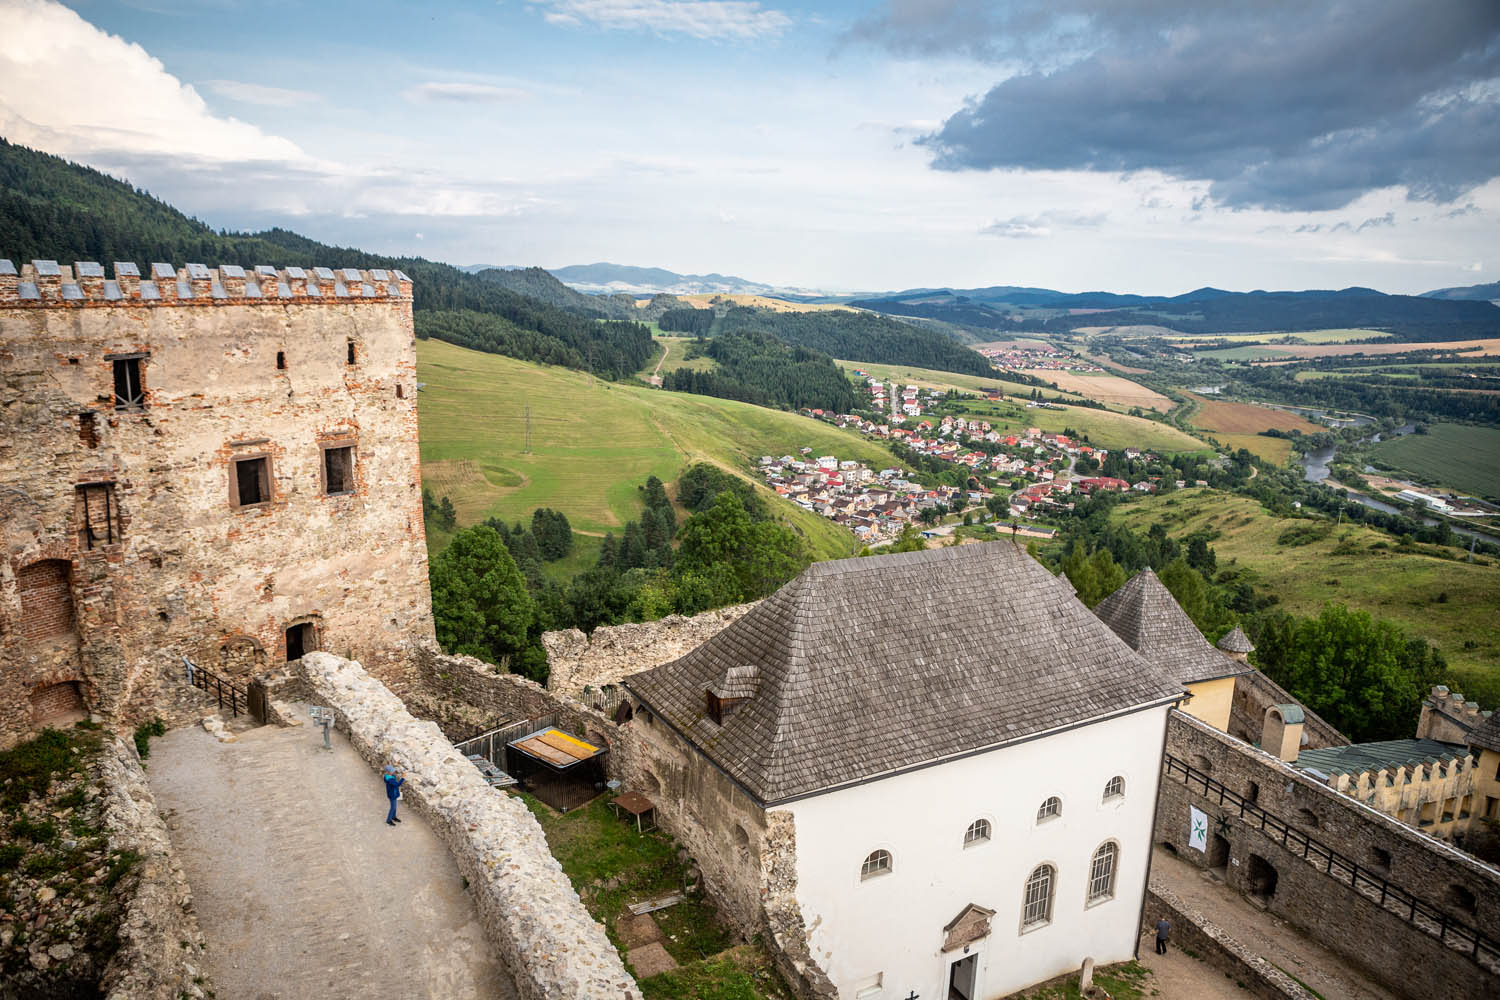 Uitzicht op het kasteel Ľubovňa en het naastgelegen dorp vanaf de toren van het kasteel.